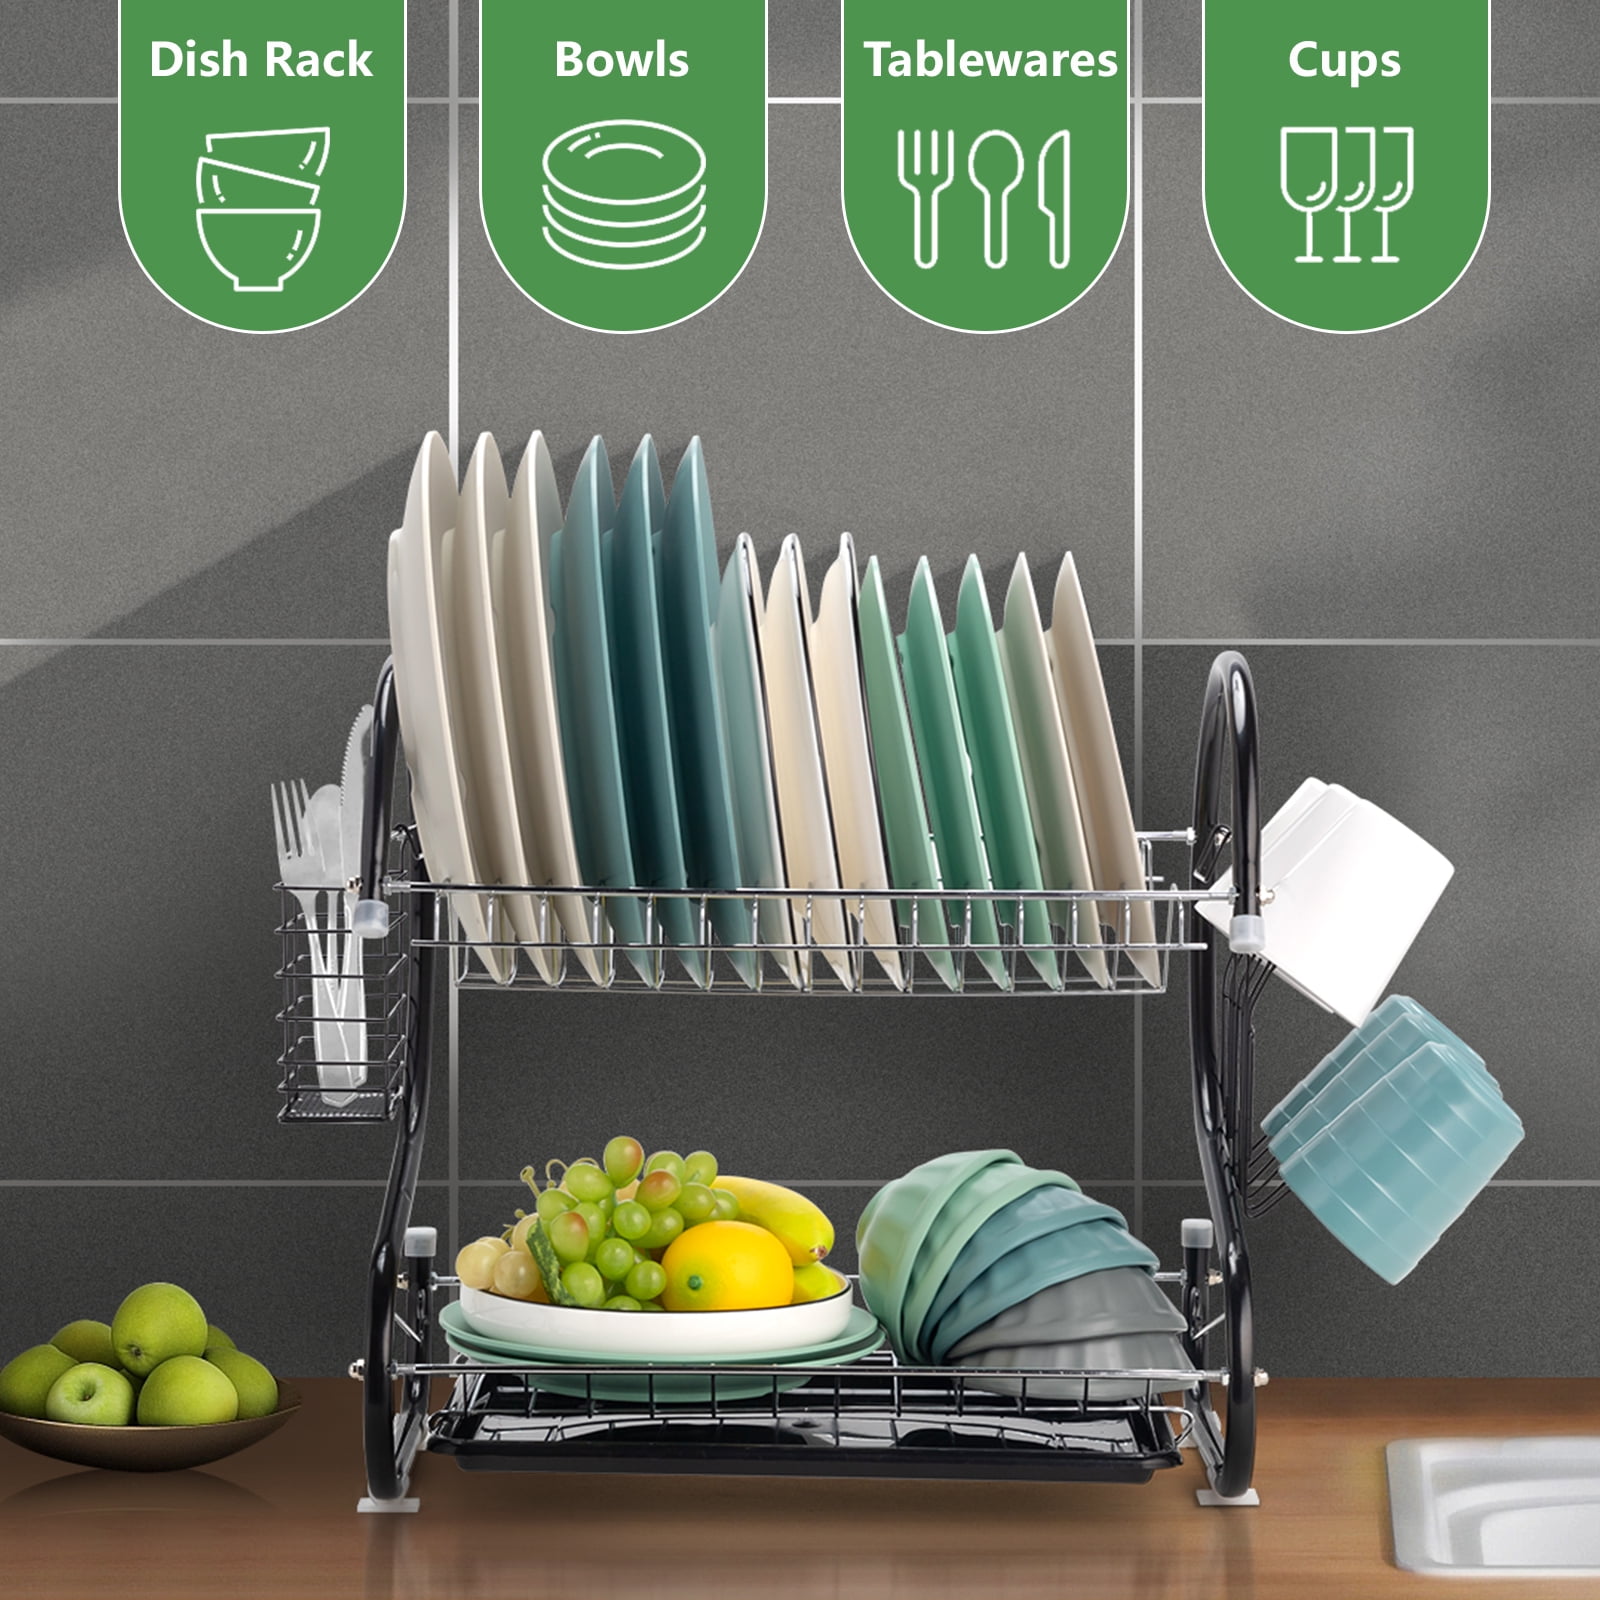 PETXPERT Dish Drying Rack, Expandable Dish Rack for Kitchen